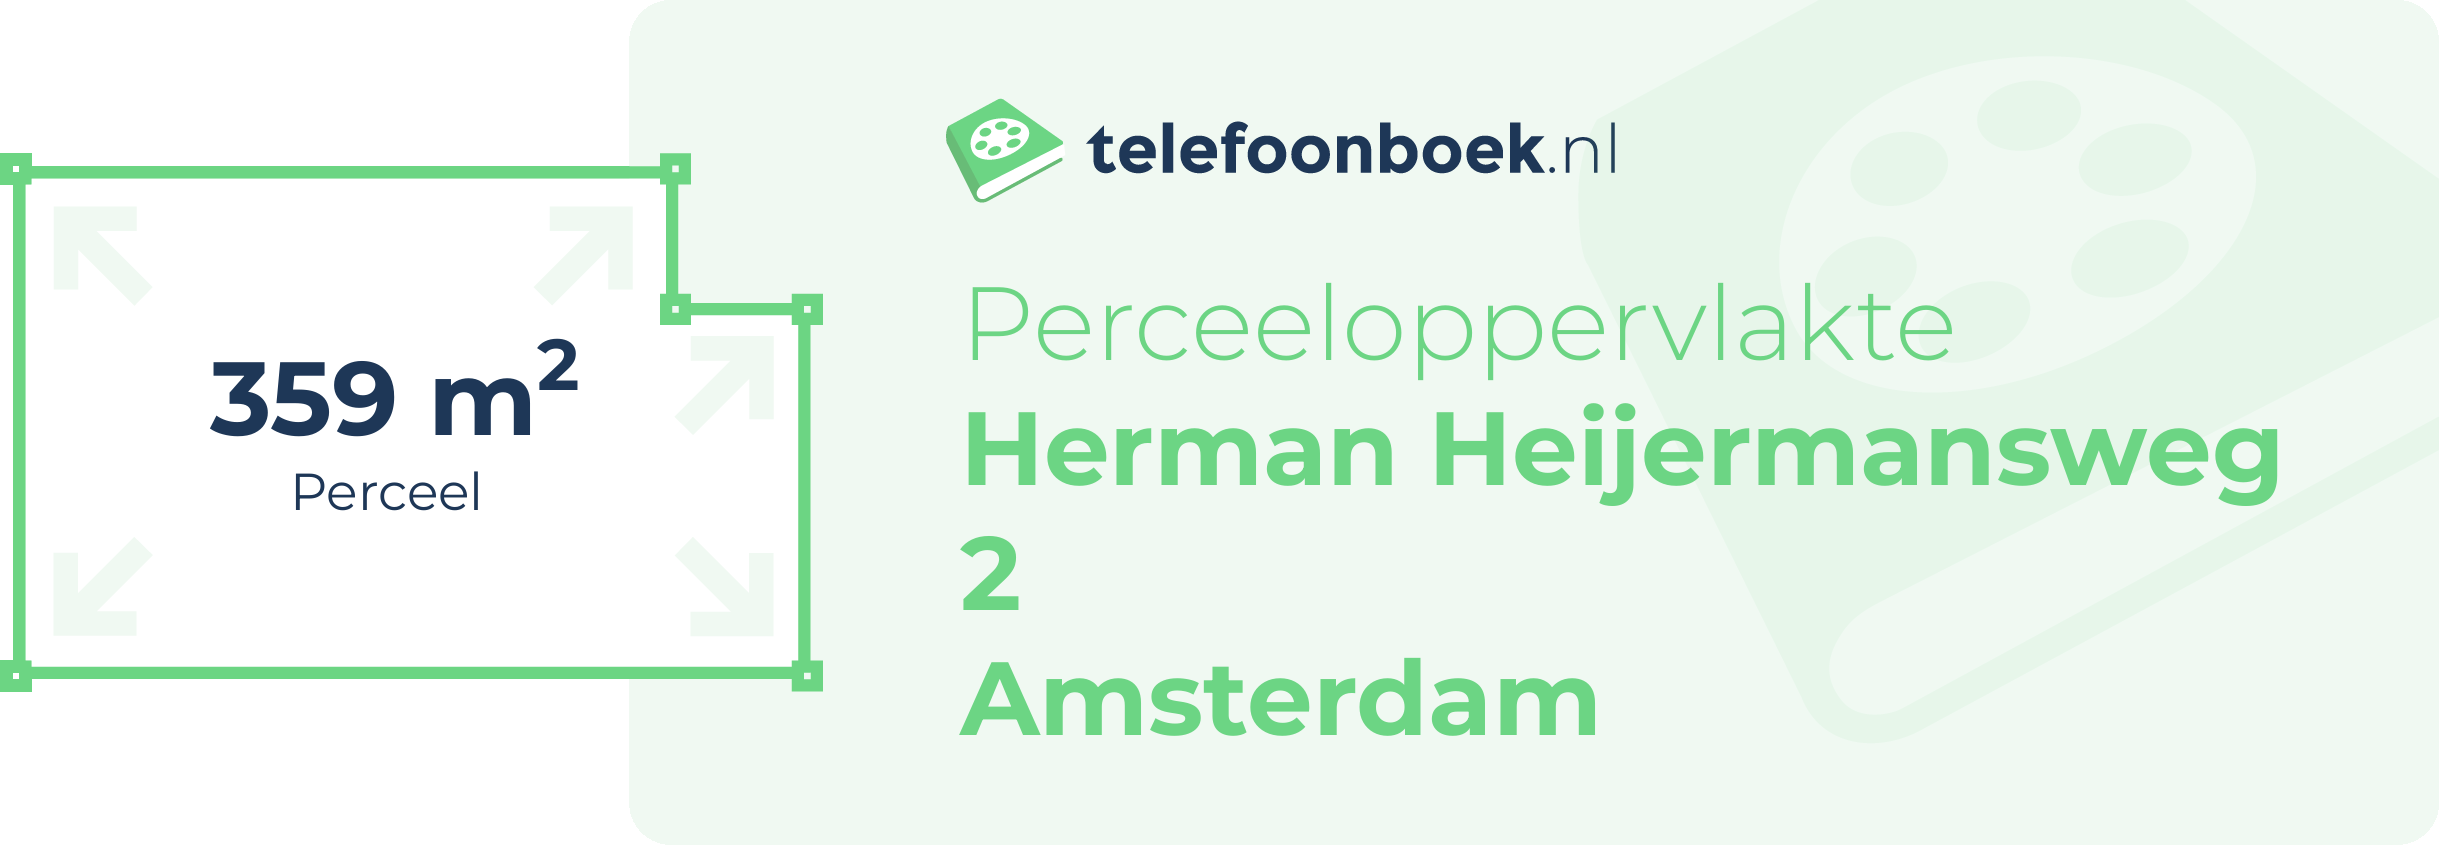 Perceeloppervlakte Herman Heijermansweg 2 Amsterdam